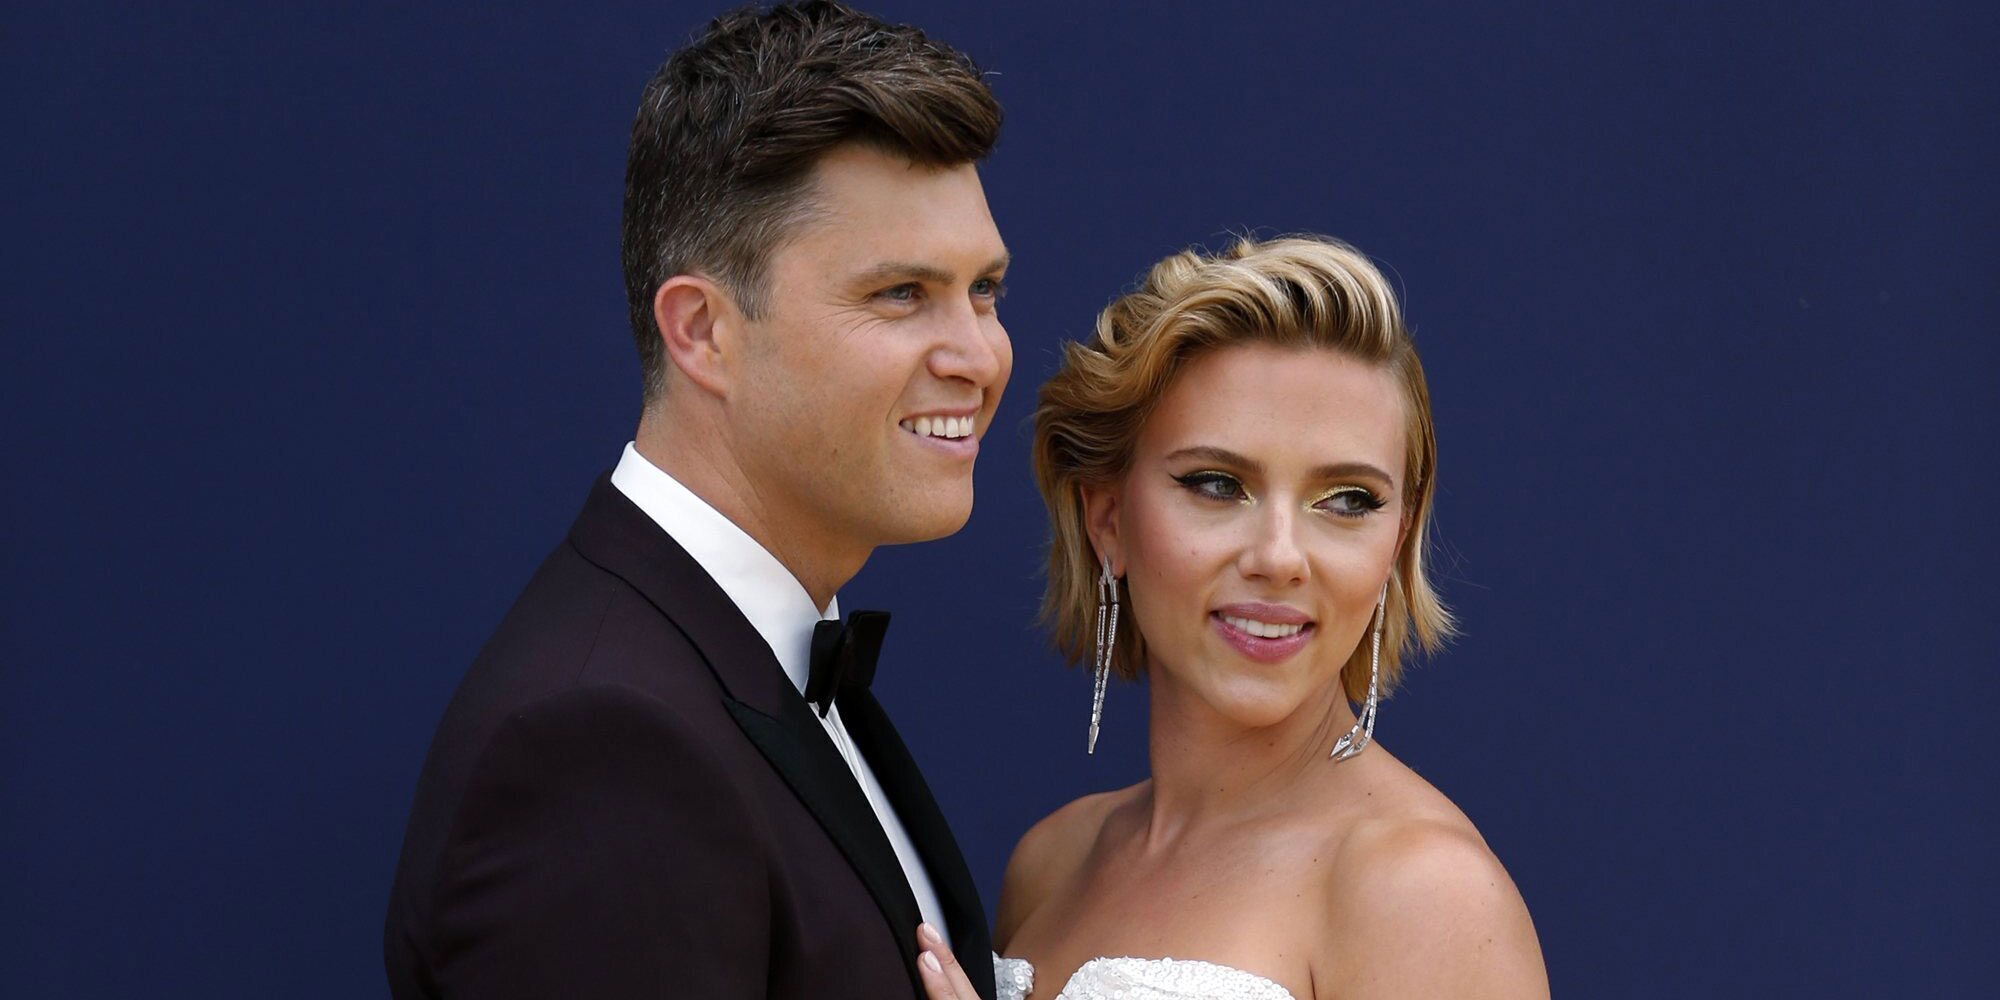 Colin Jost confirma el embarazo de Scarlett Johansson: "Estamos emocionados"